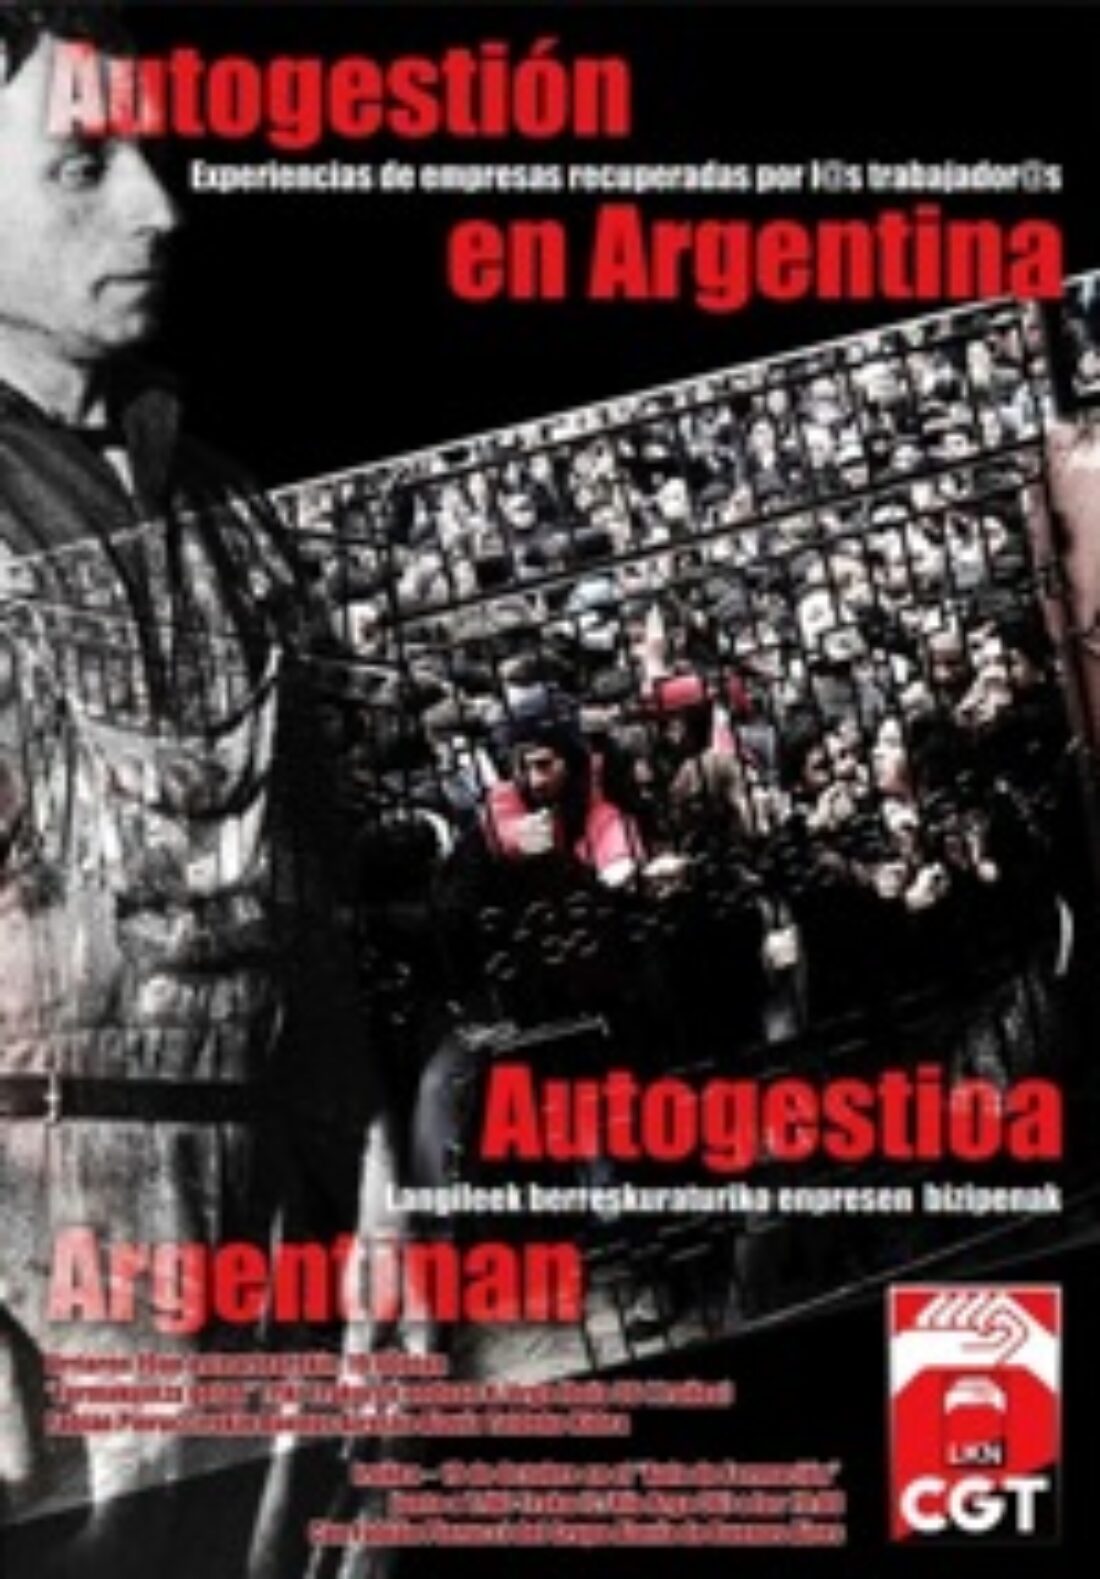 19 octubre, Iruñea : Autogestión en Argentina